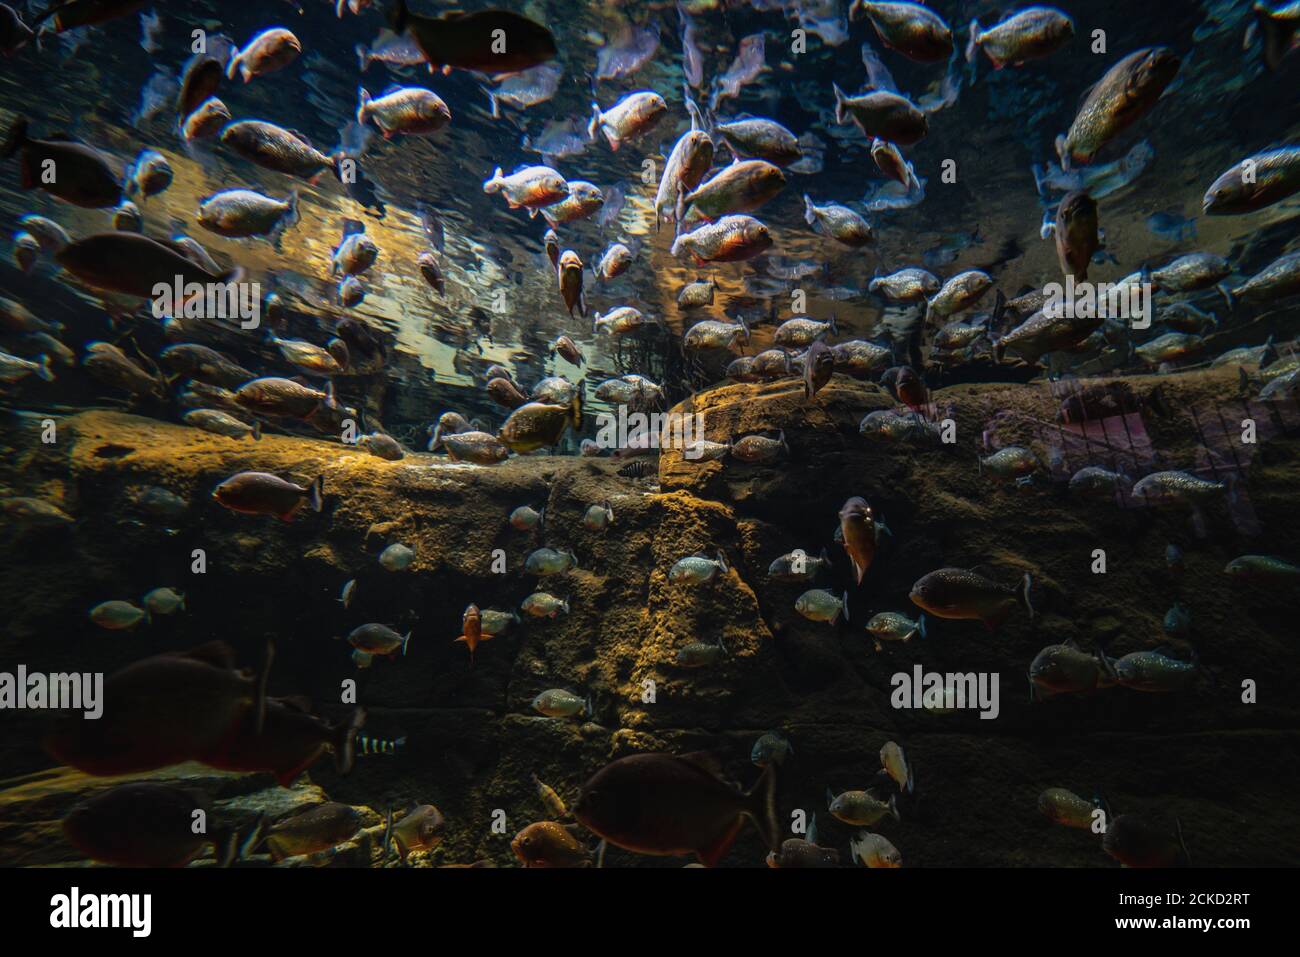 Il gregge di pesci si è riunito in una scena subacquea. Un grande gruppo o un gruppo di pesci impaccati insieme sotto l'acqua desta preoccupazione per la sostenibilità dell'ecosistema Foto Stock